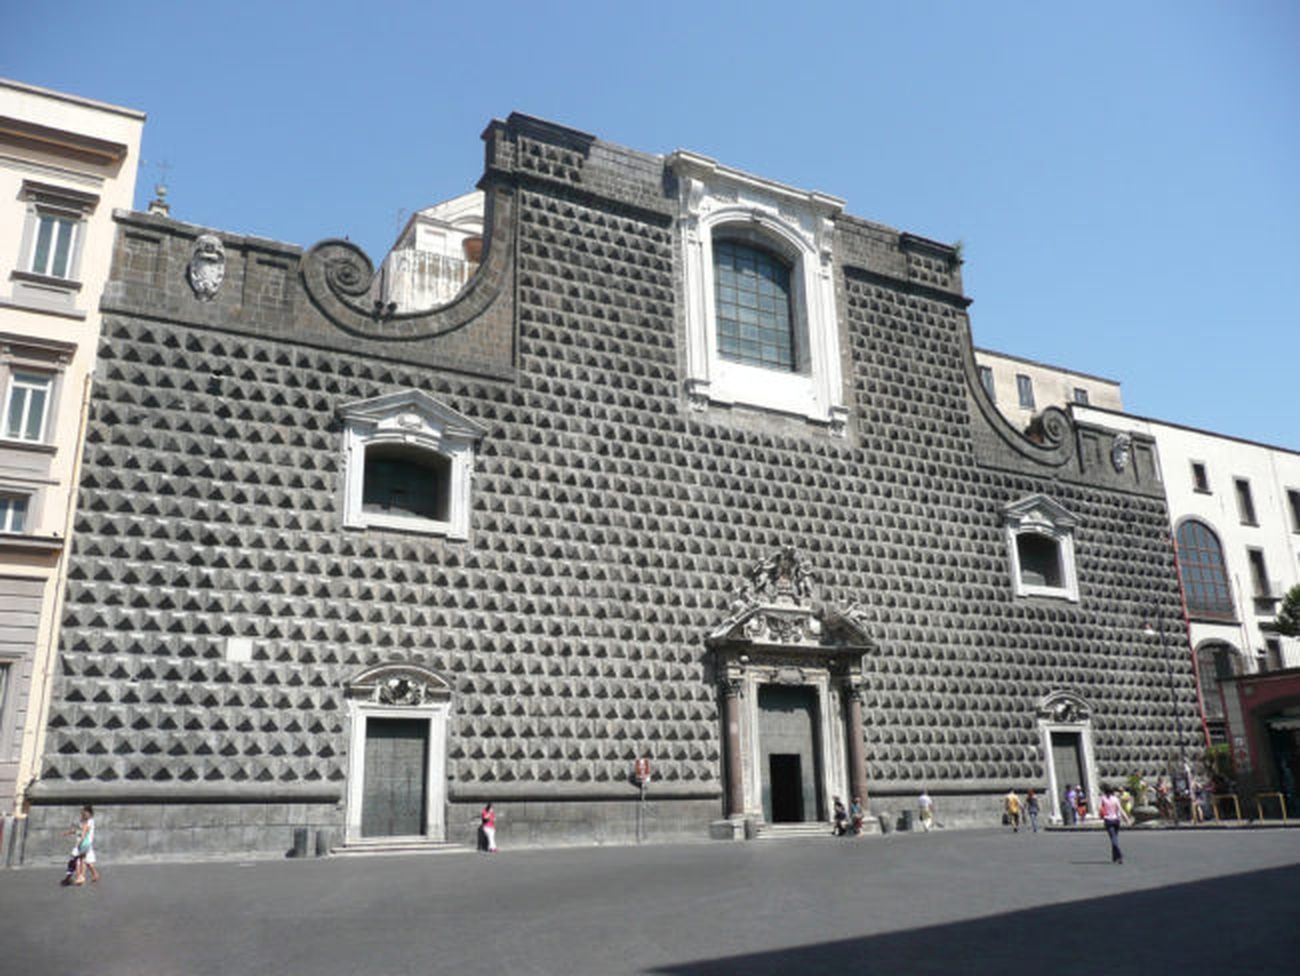 Chiesa del Gesù Nuovo, Napoli. Photo via vocedinapoli.it